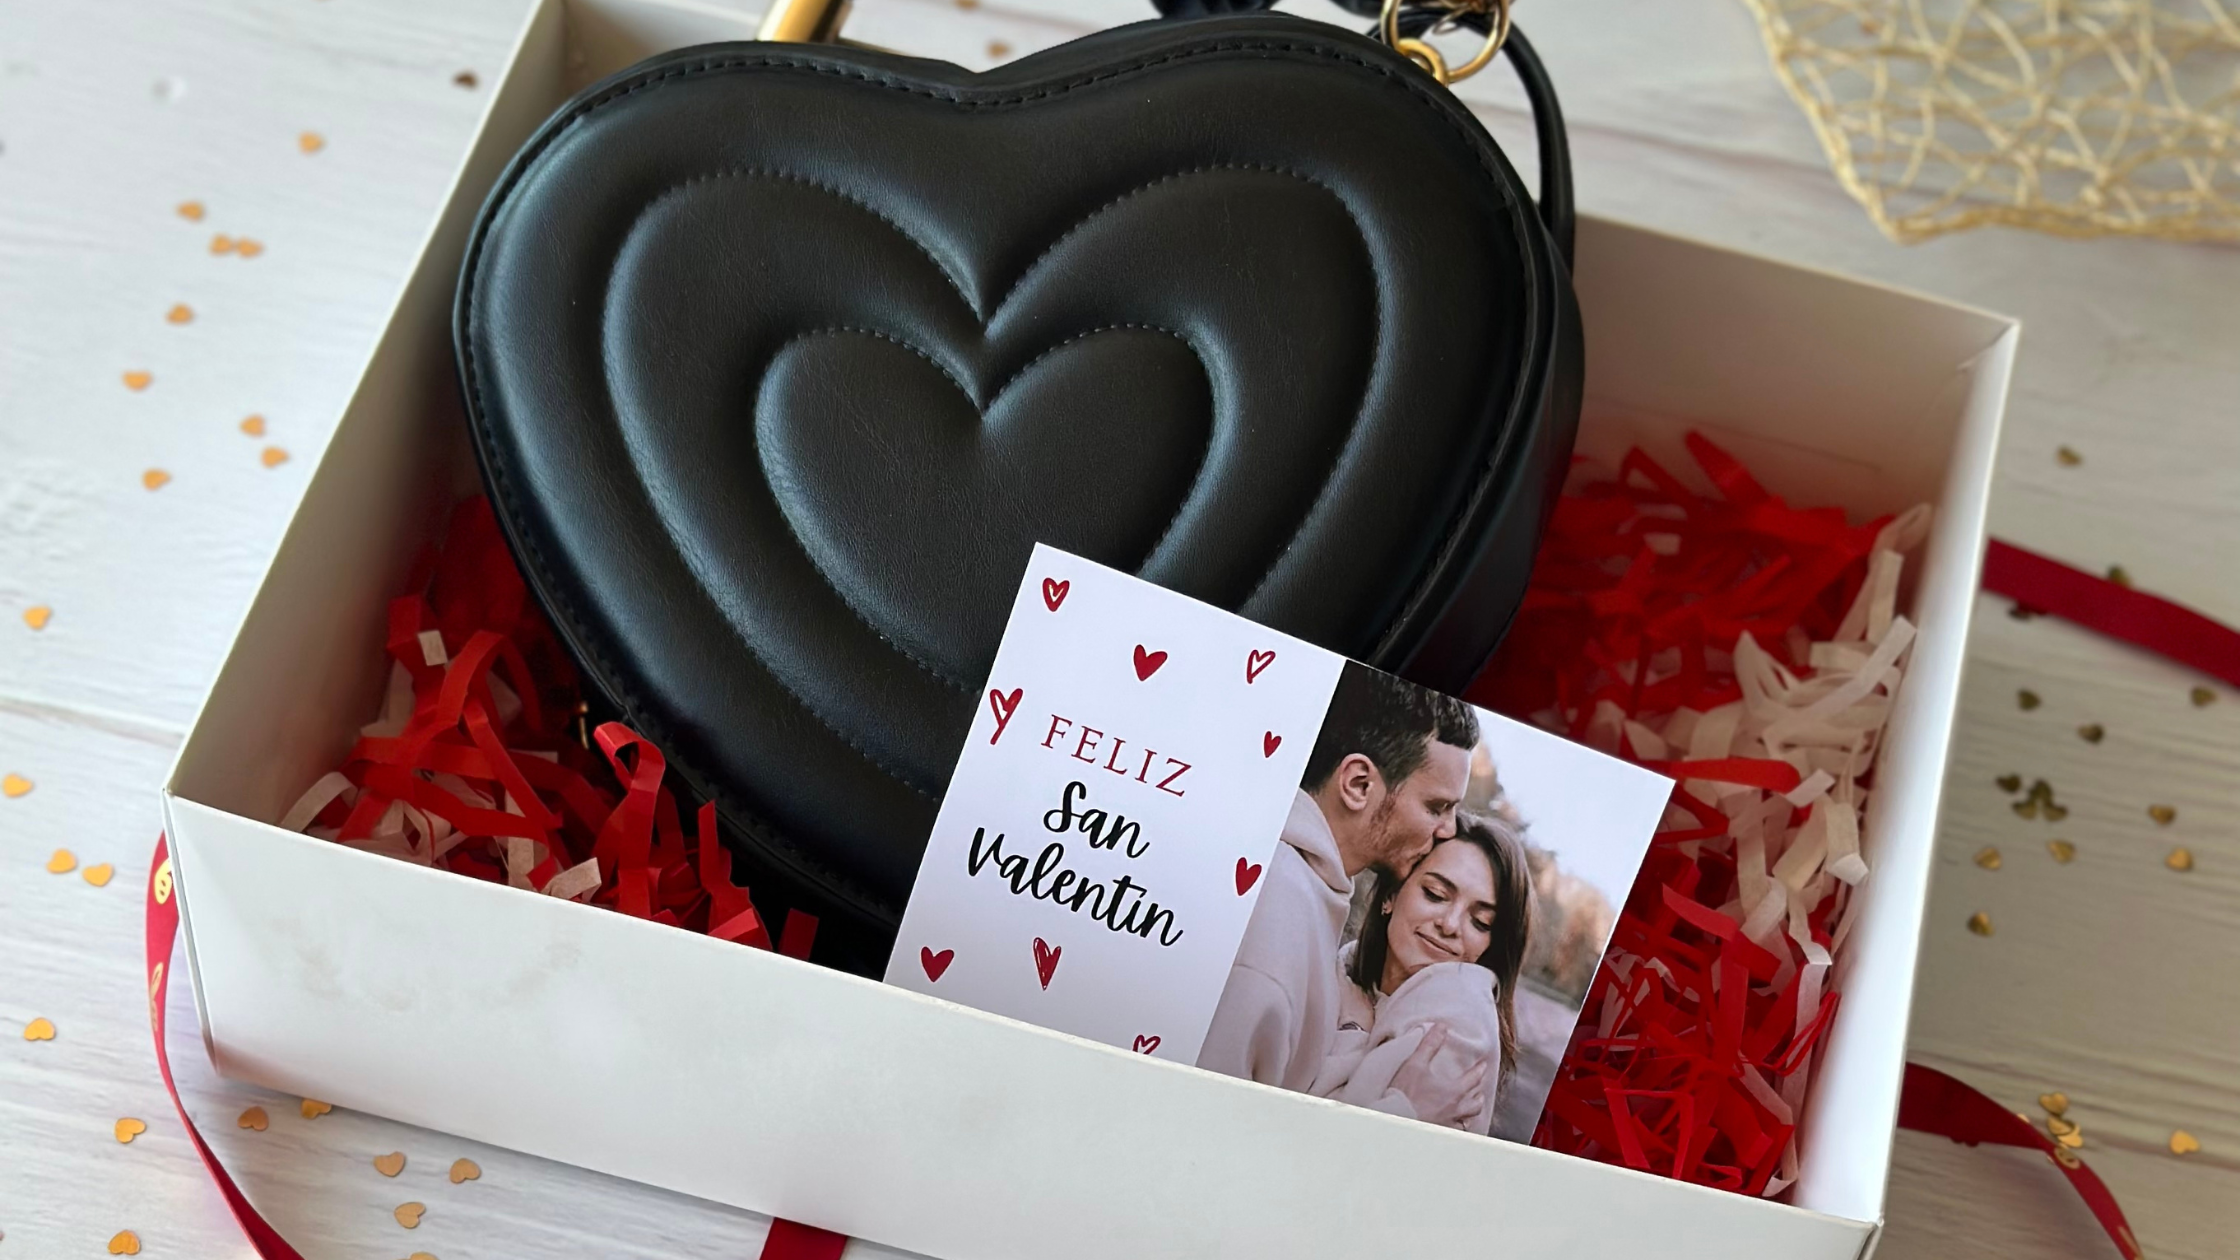 Regalo corazón y chocolates, ideal para enamorados y día de San valentin